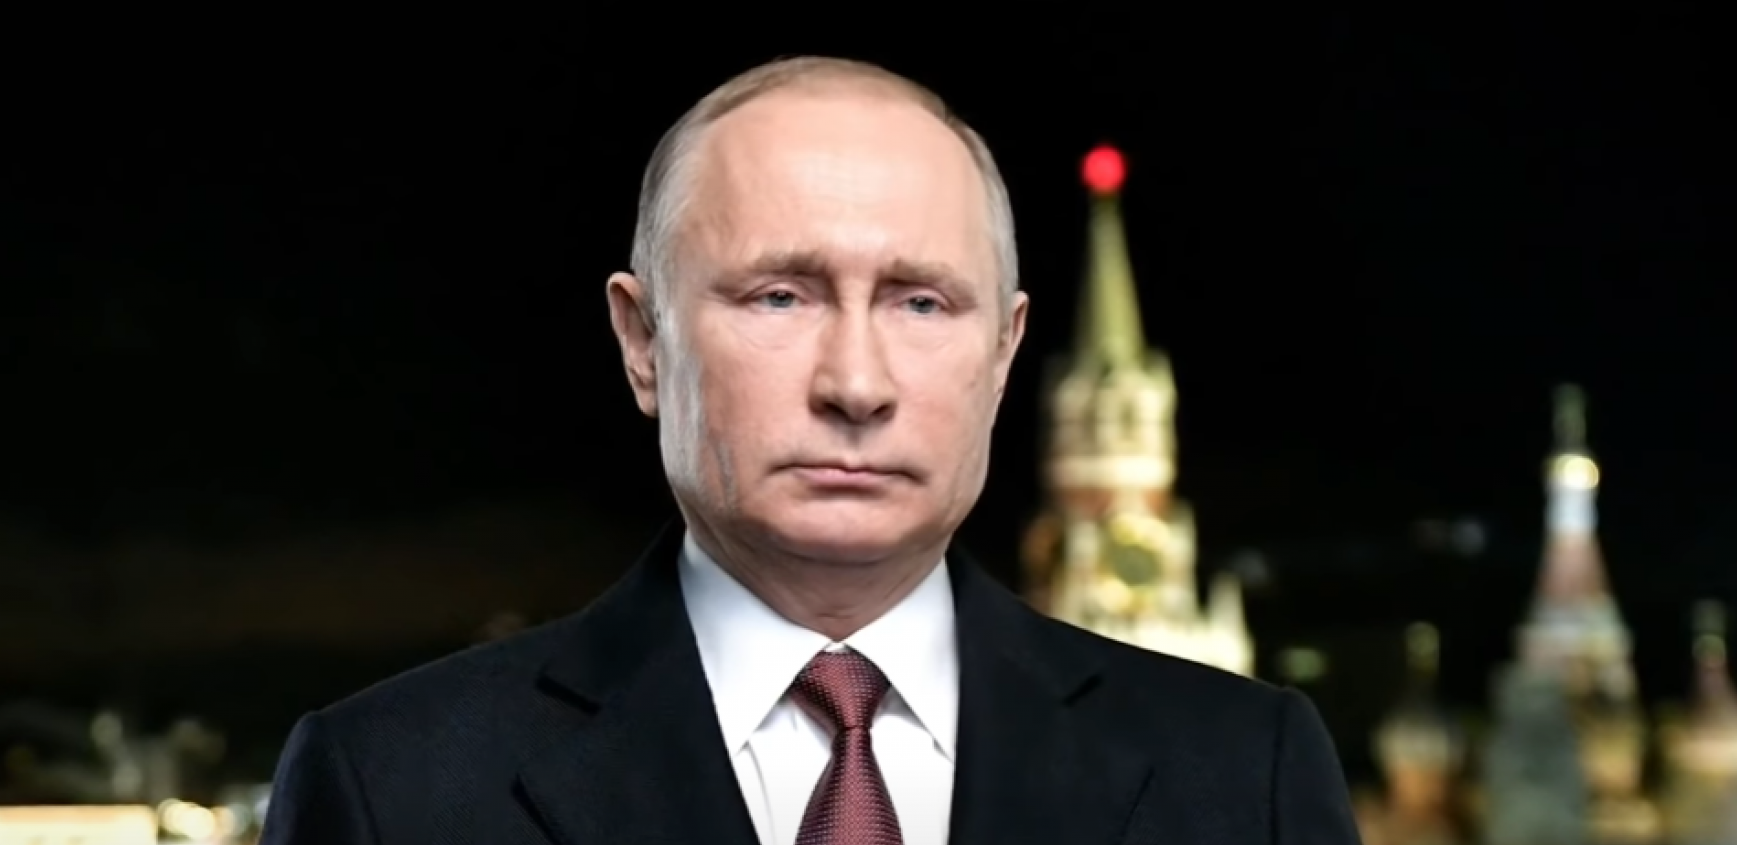 RUSIJA MORA DA KRENE SVOJIM PUTEM Trajno narušeni odnosi Moskve i Zapada